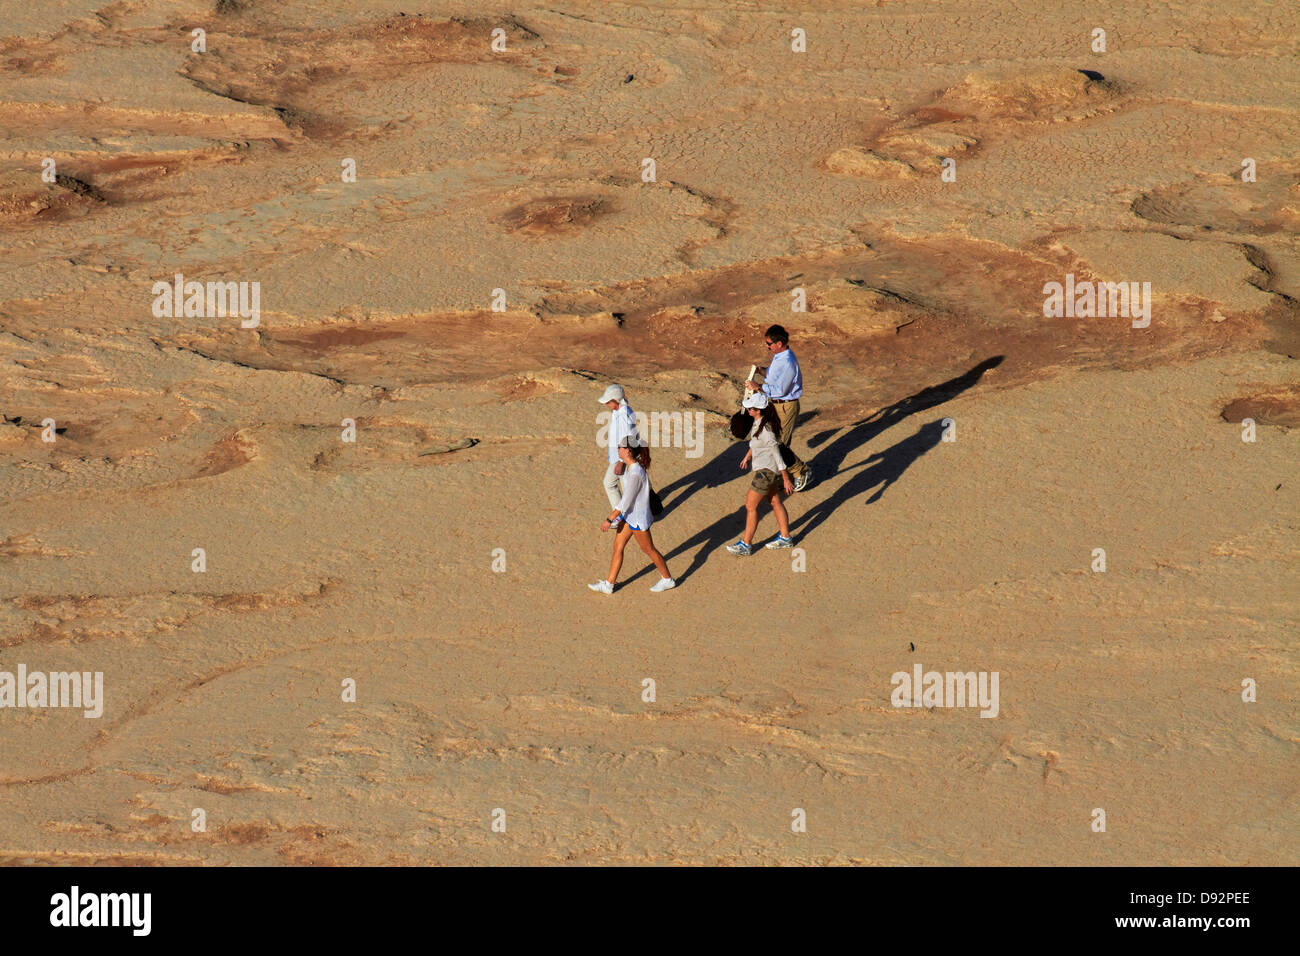 Les touristes sur Deadvlei, près de Sossusvlei, Namib-Naukluft National Park, Namibie, Afrique Banque D'Images